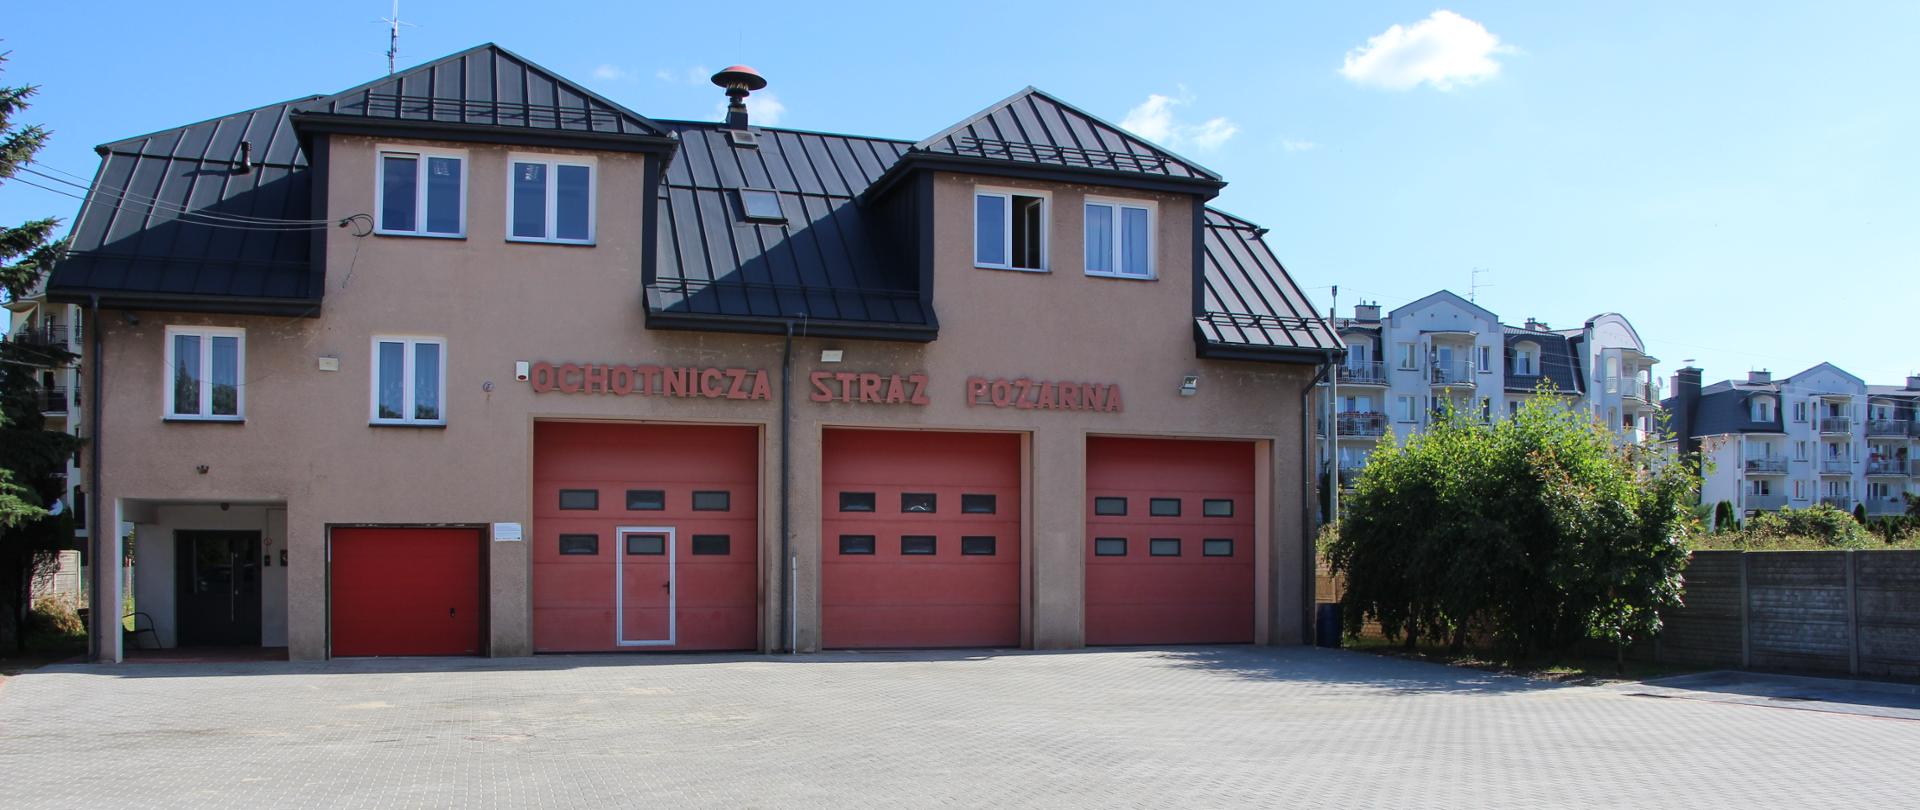 Strażnica Ochotniczej Straży Pożarnej w Jabłonnie. NA zdjęciu budynek piętrowy. Na parterze 4 bramy na pojazdy bojowenad bramami napis ochotnicza straż pożarna dach szary.